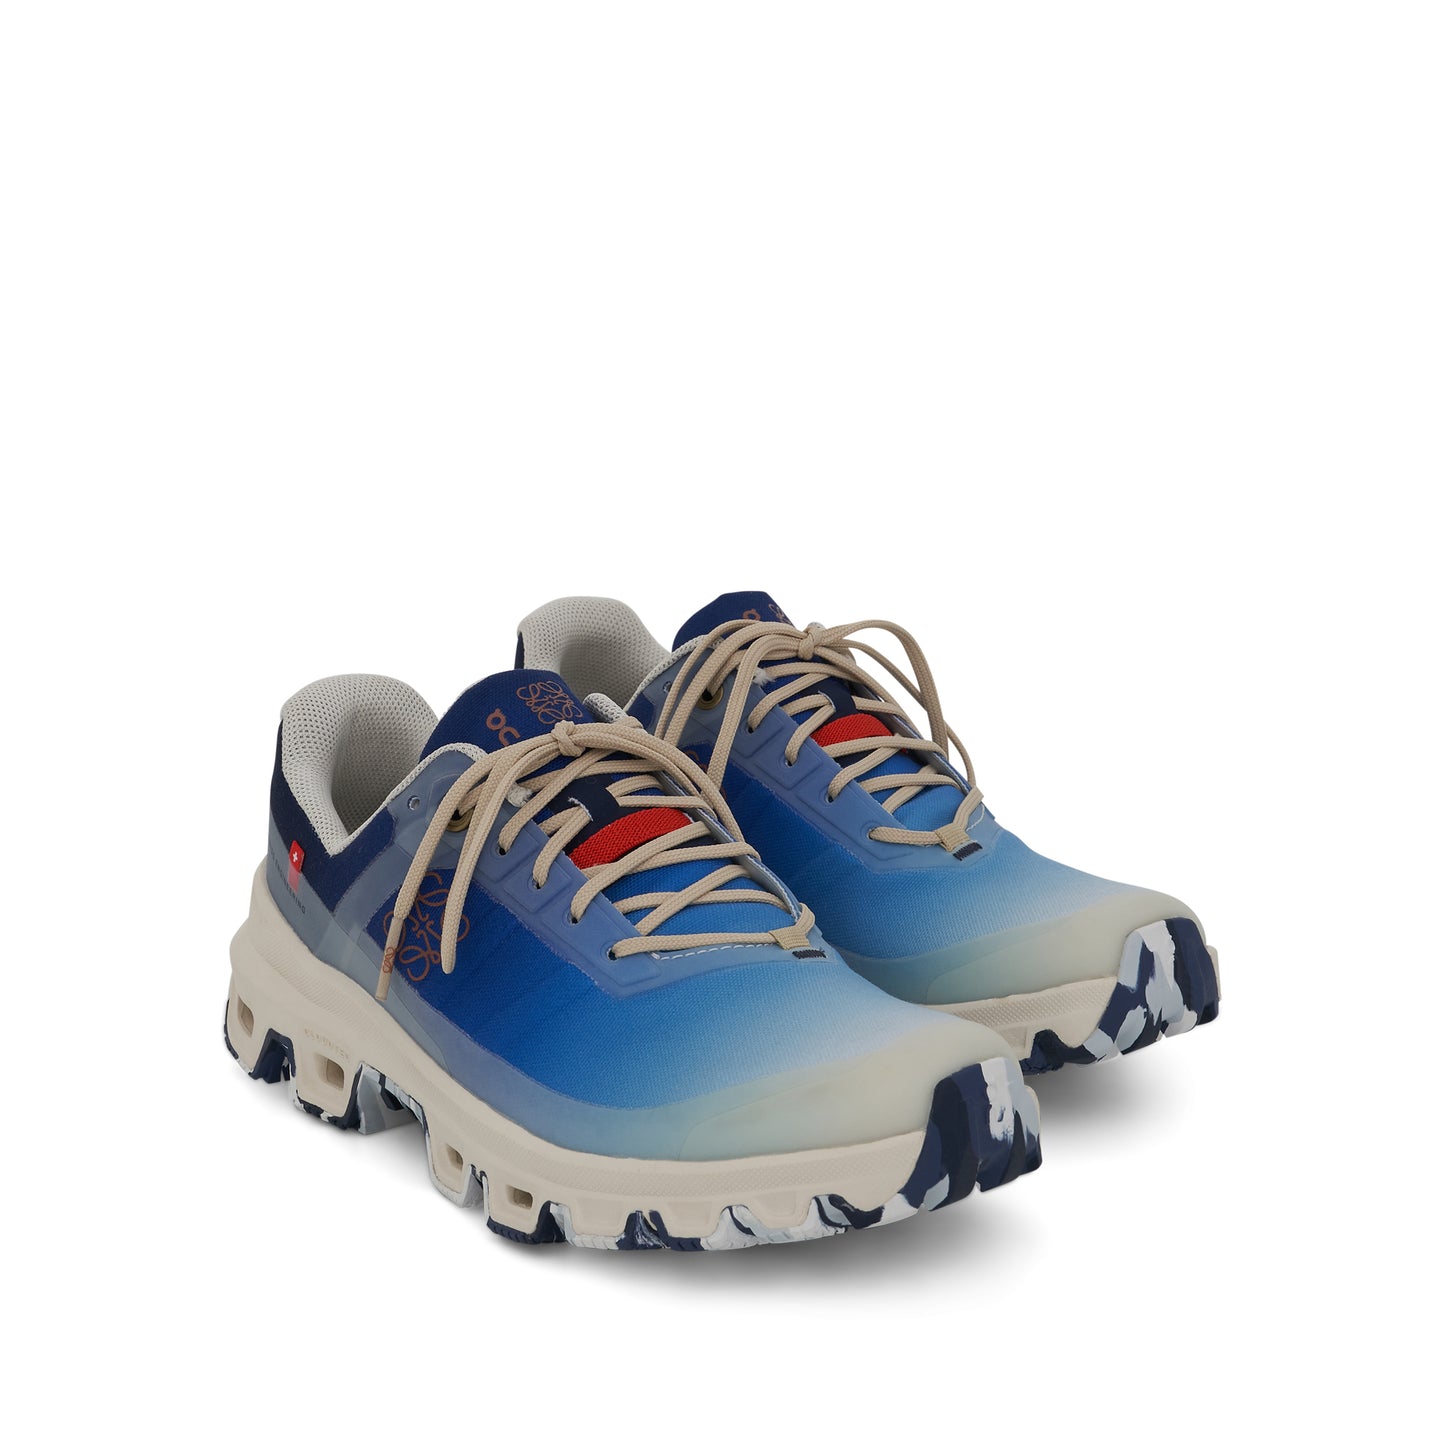 Loewe x ON Cloudventure Sneakers in Gradient Blue